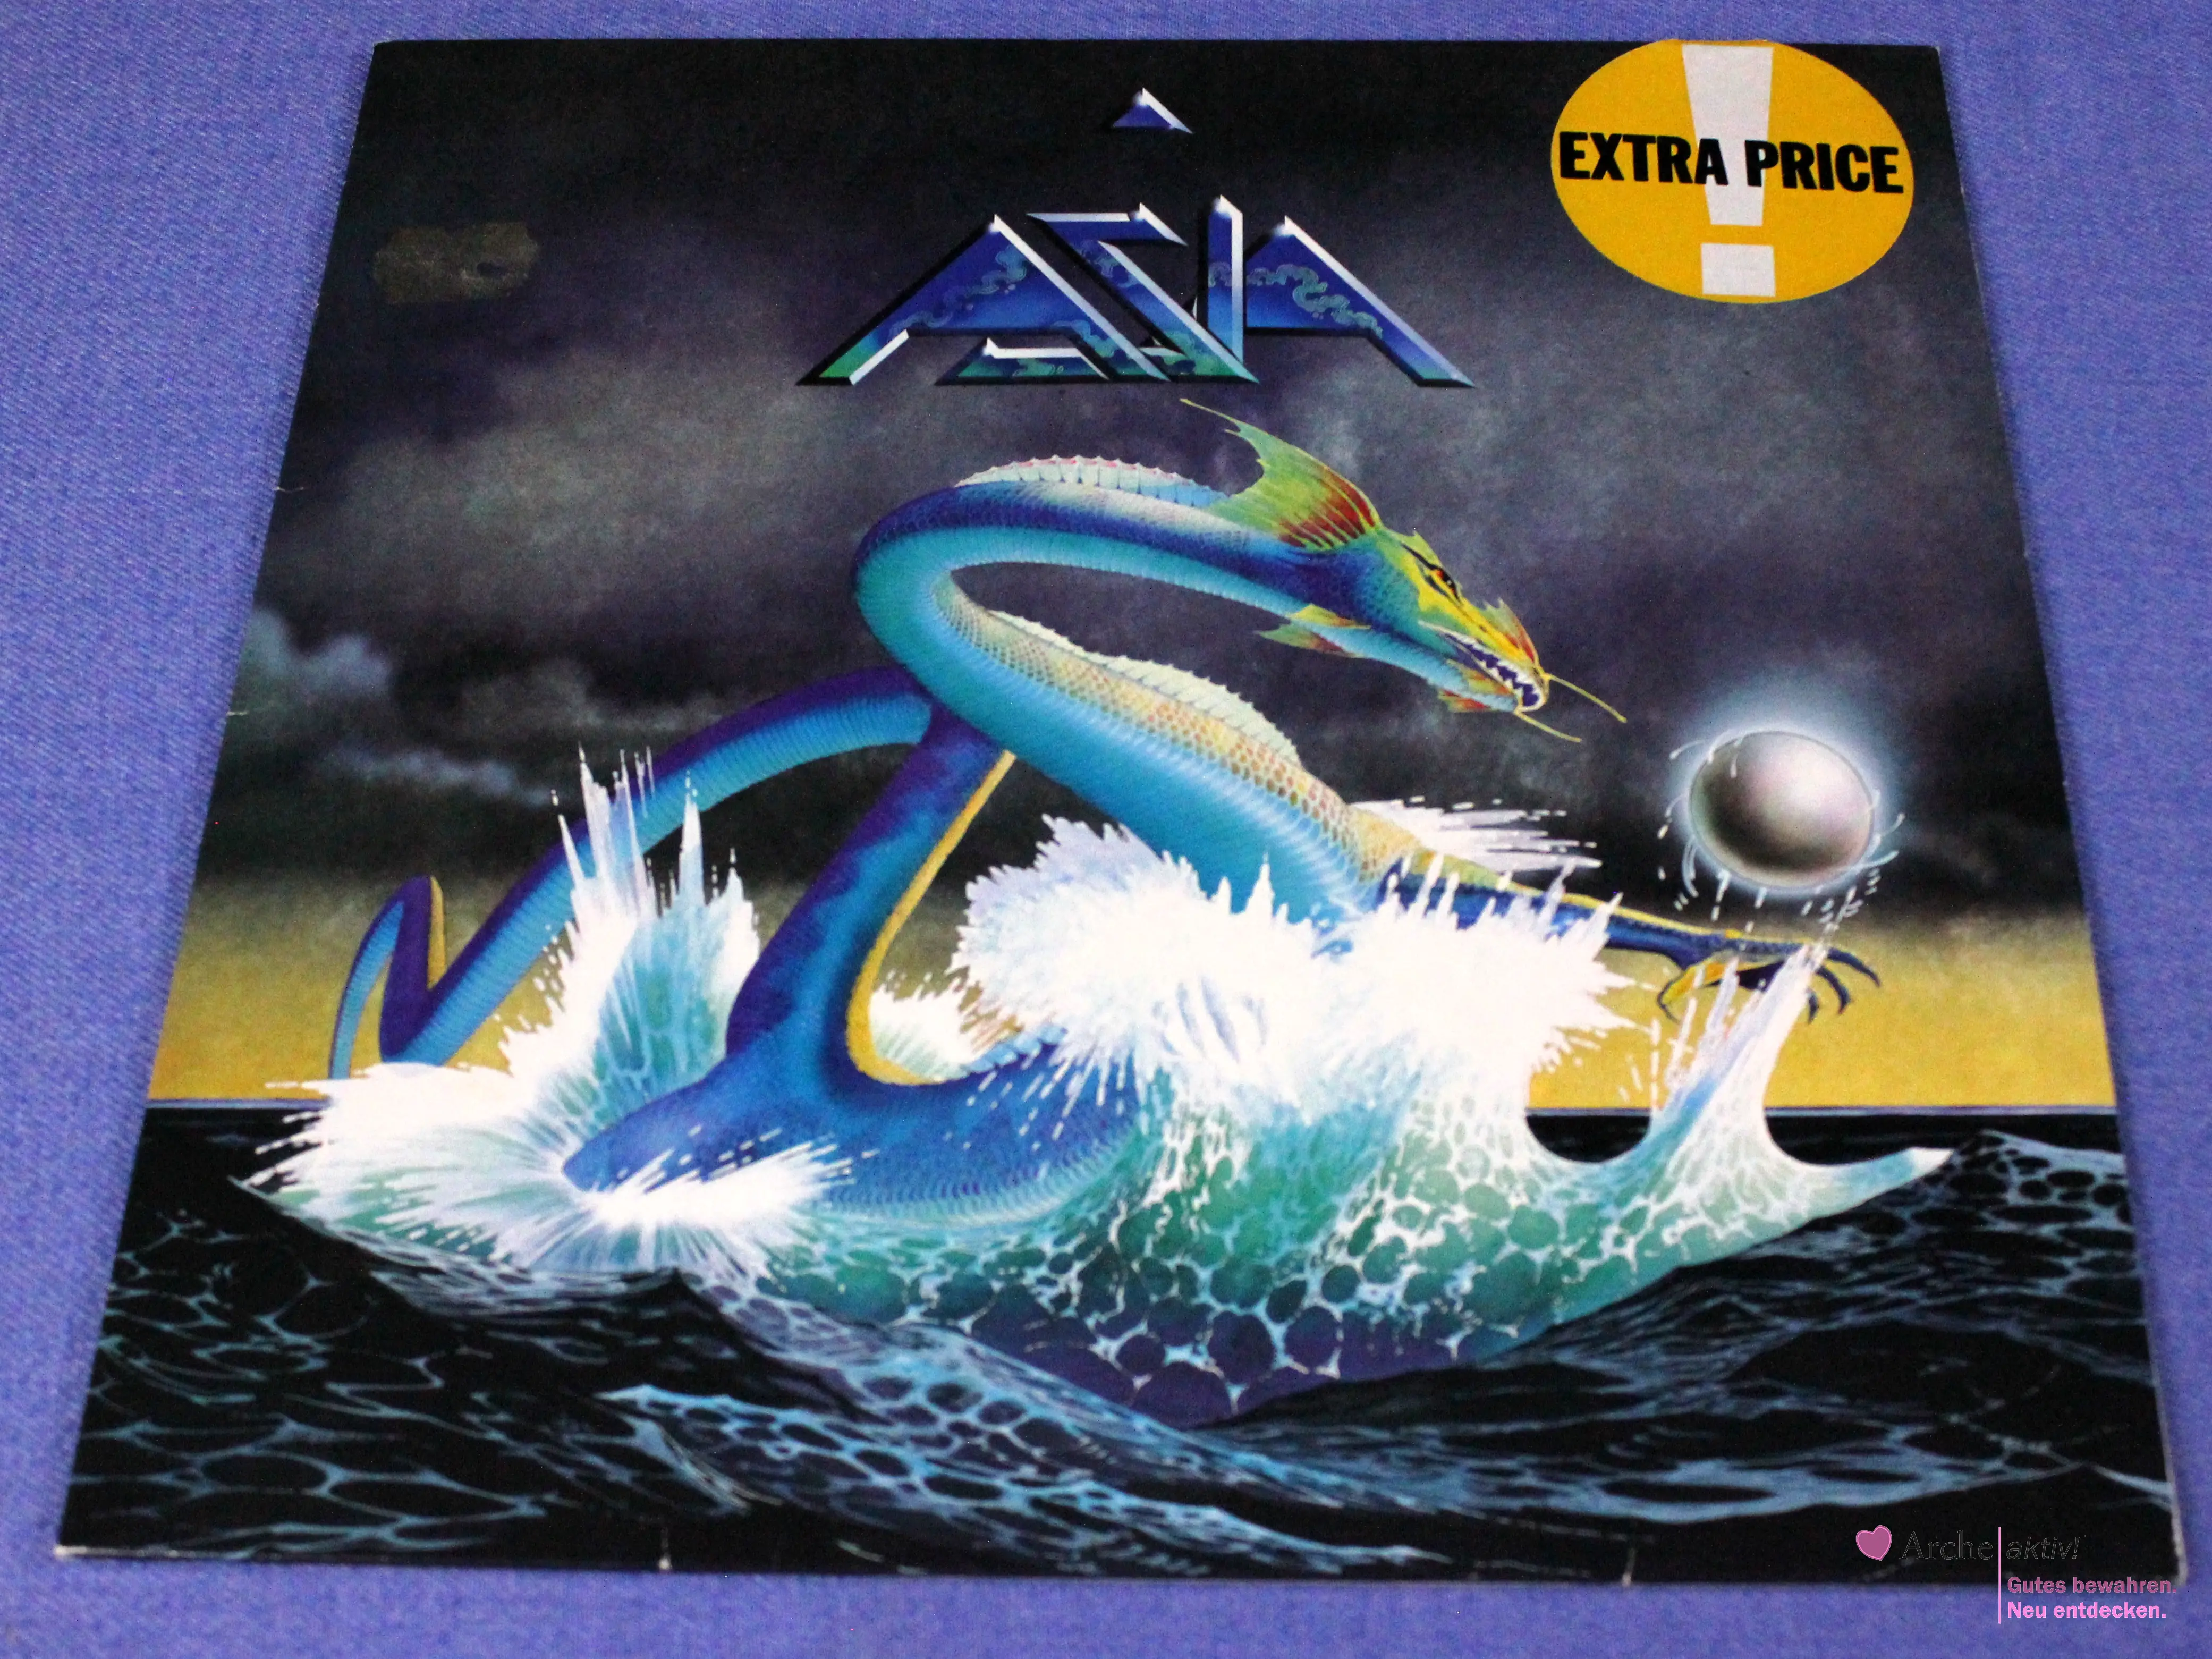 Asia - Asia (Vinyl) LP, gebraucht